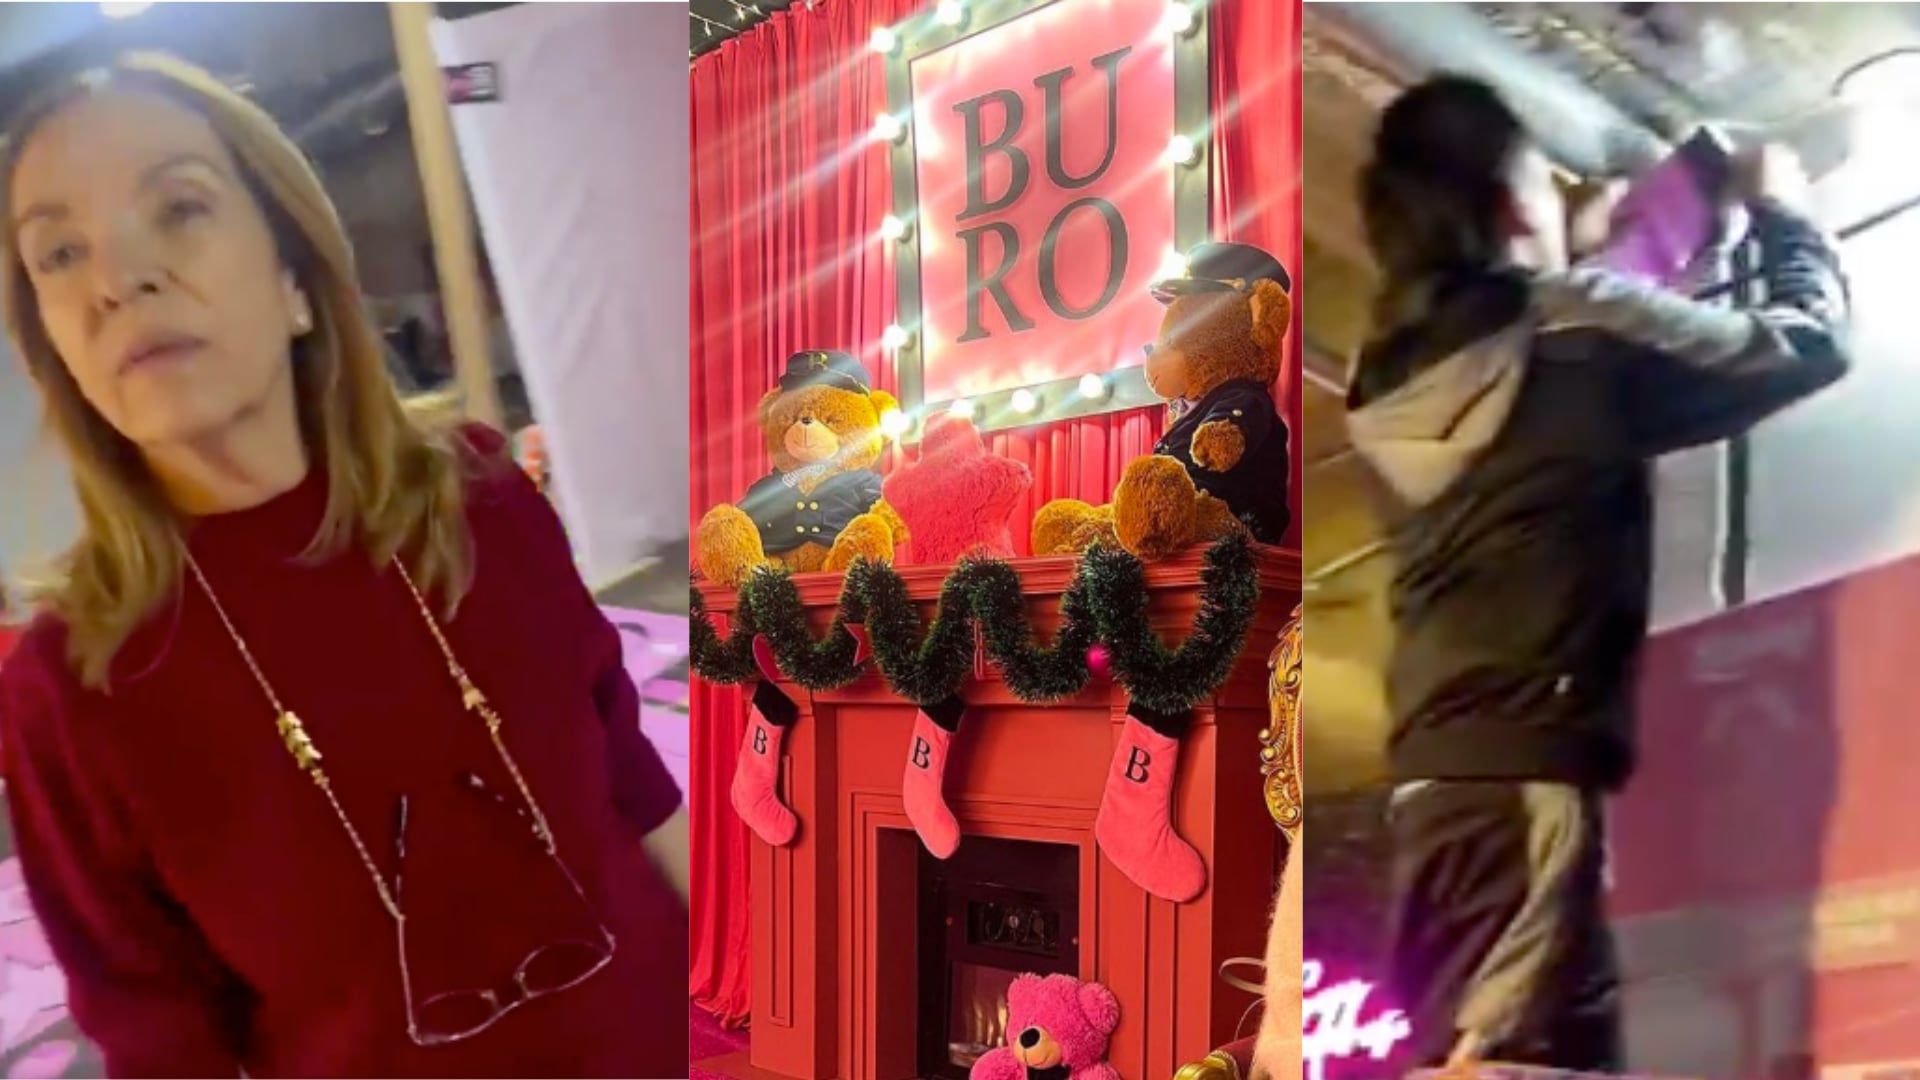 “Estafadora y ladrona”: con videos, emprendedores denuncian a la Feria Buró por pérdidas millonarias